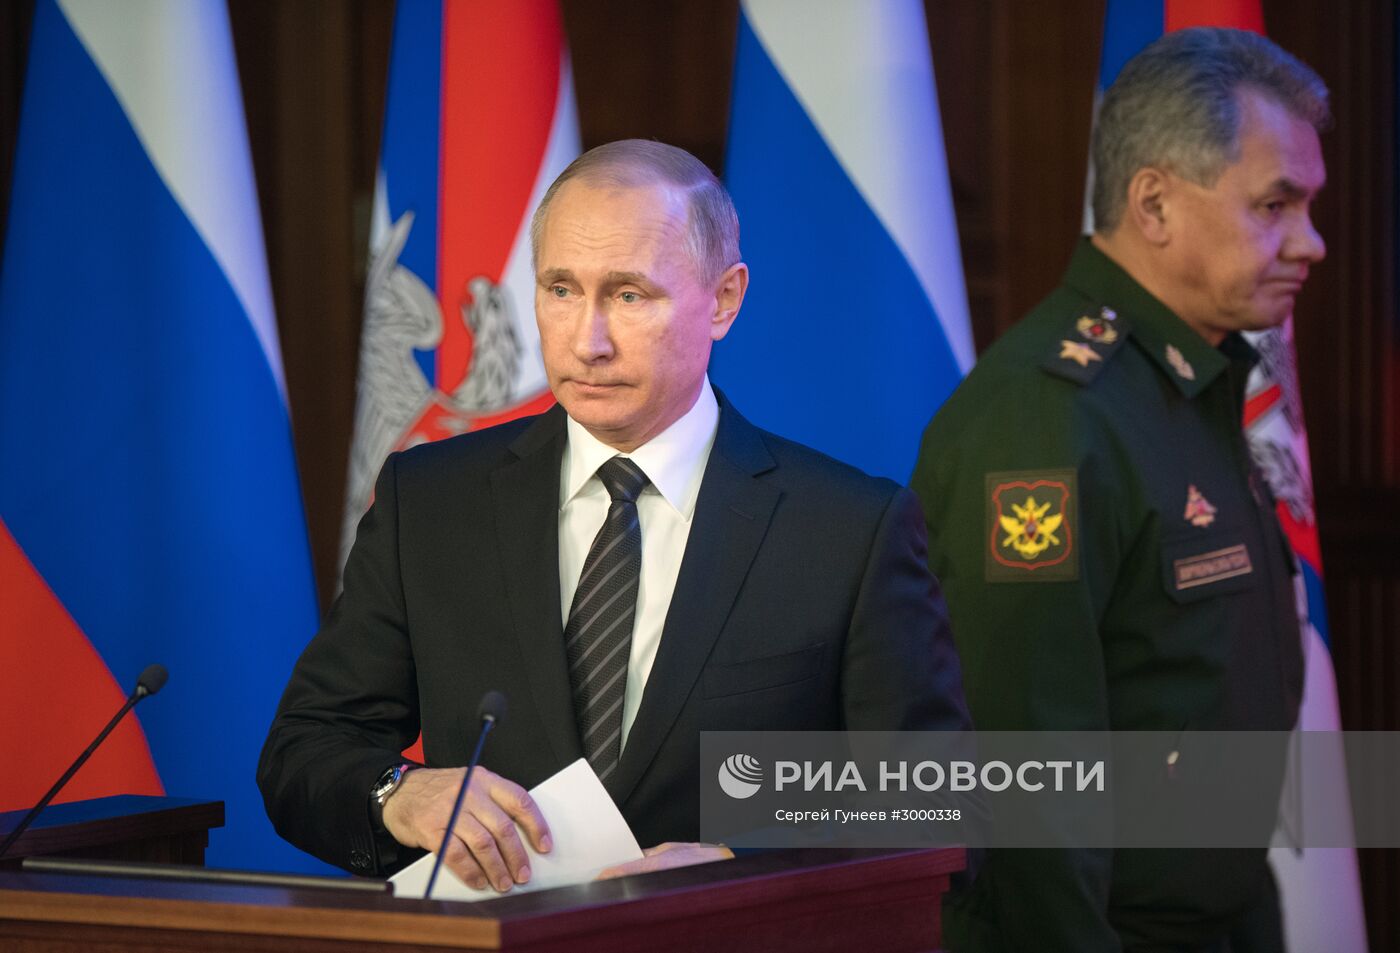 Президент РФ В. Путин принял участие в заседании расширенной коллегии Минобороры РФ